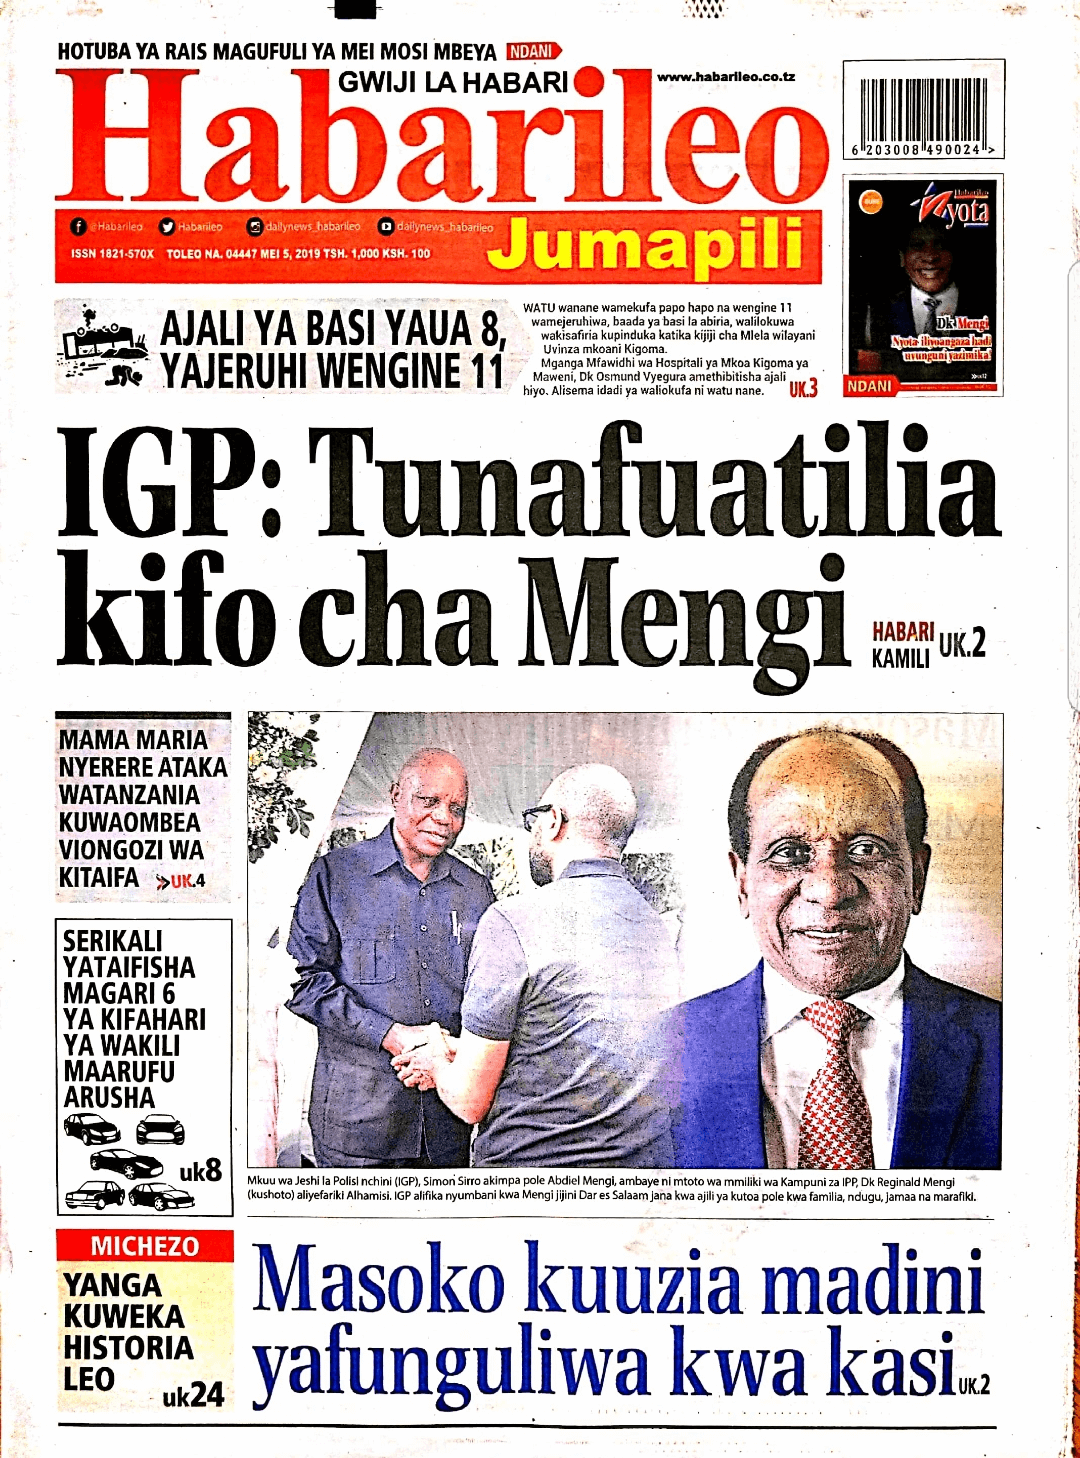 Tanzania newspapers 3 Habari Leo